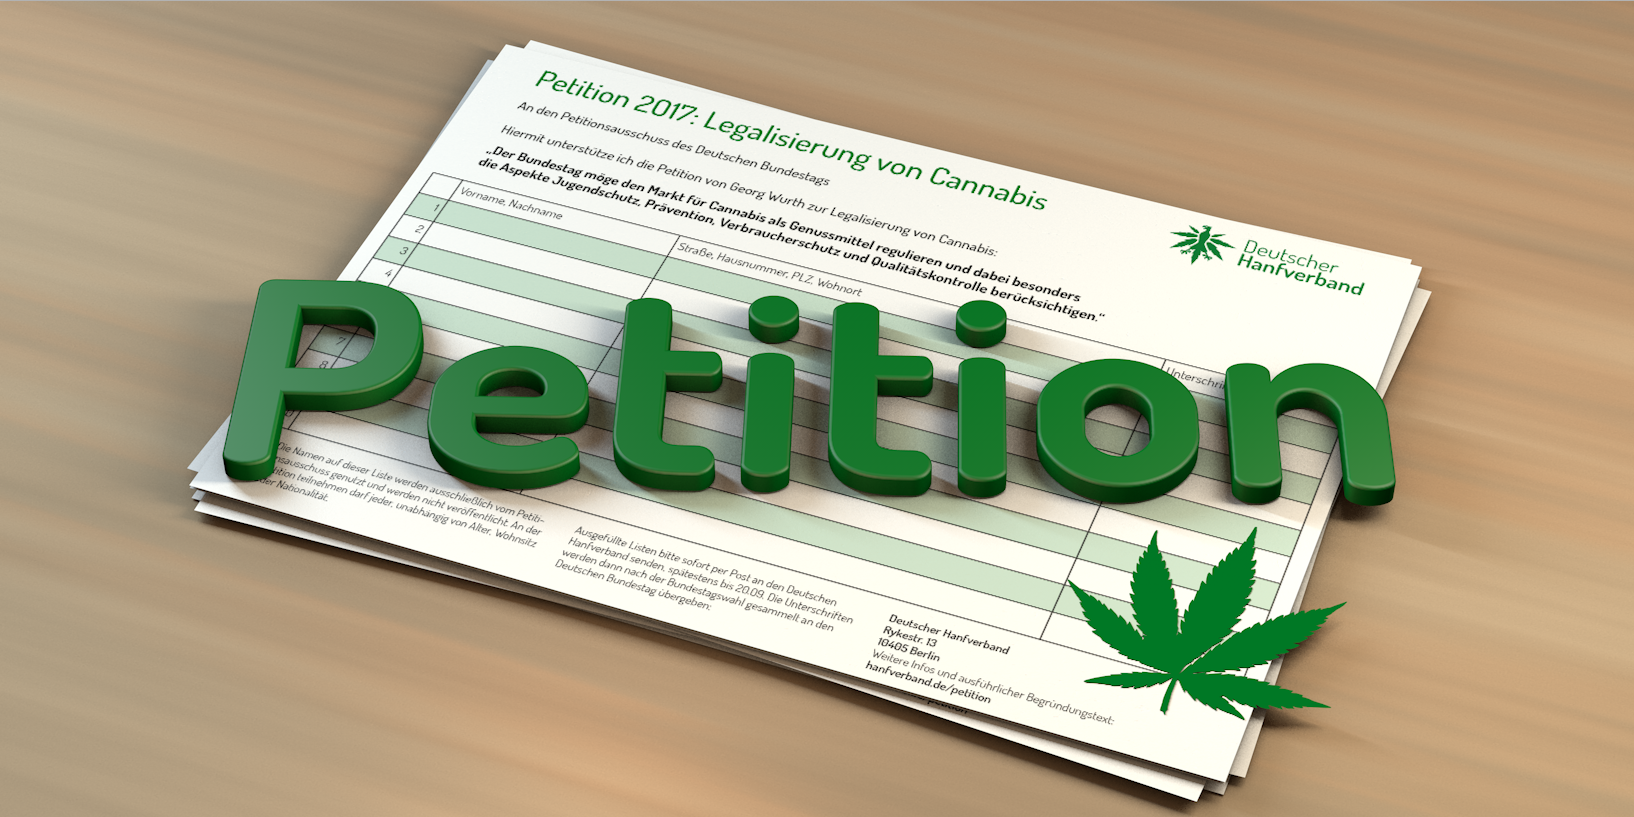 Cannabispetition 2017 – Jetzt unterschreiben